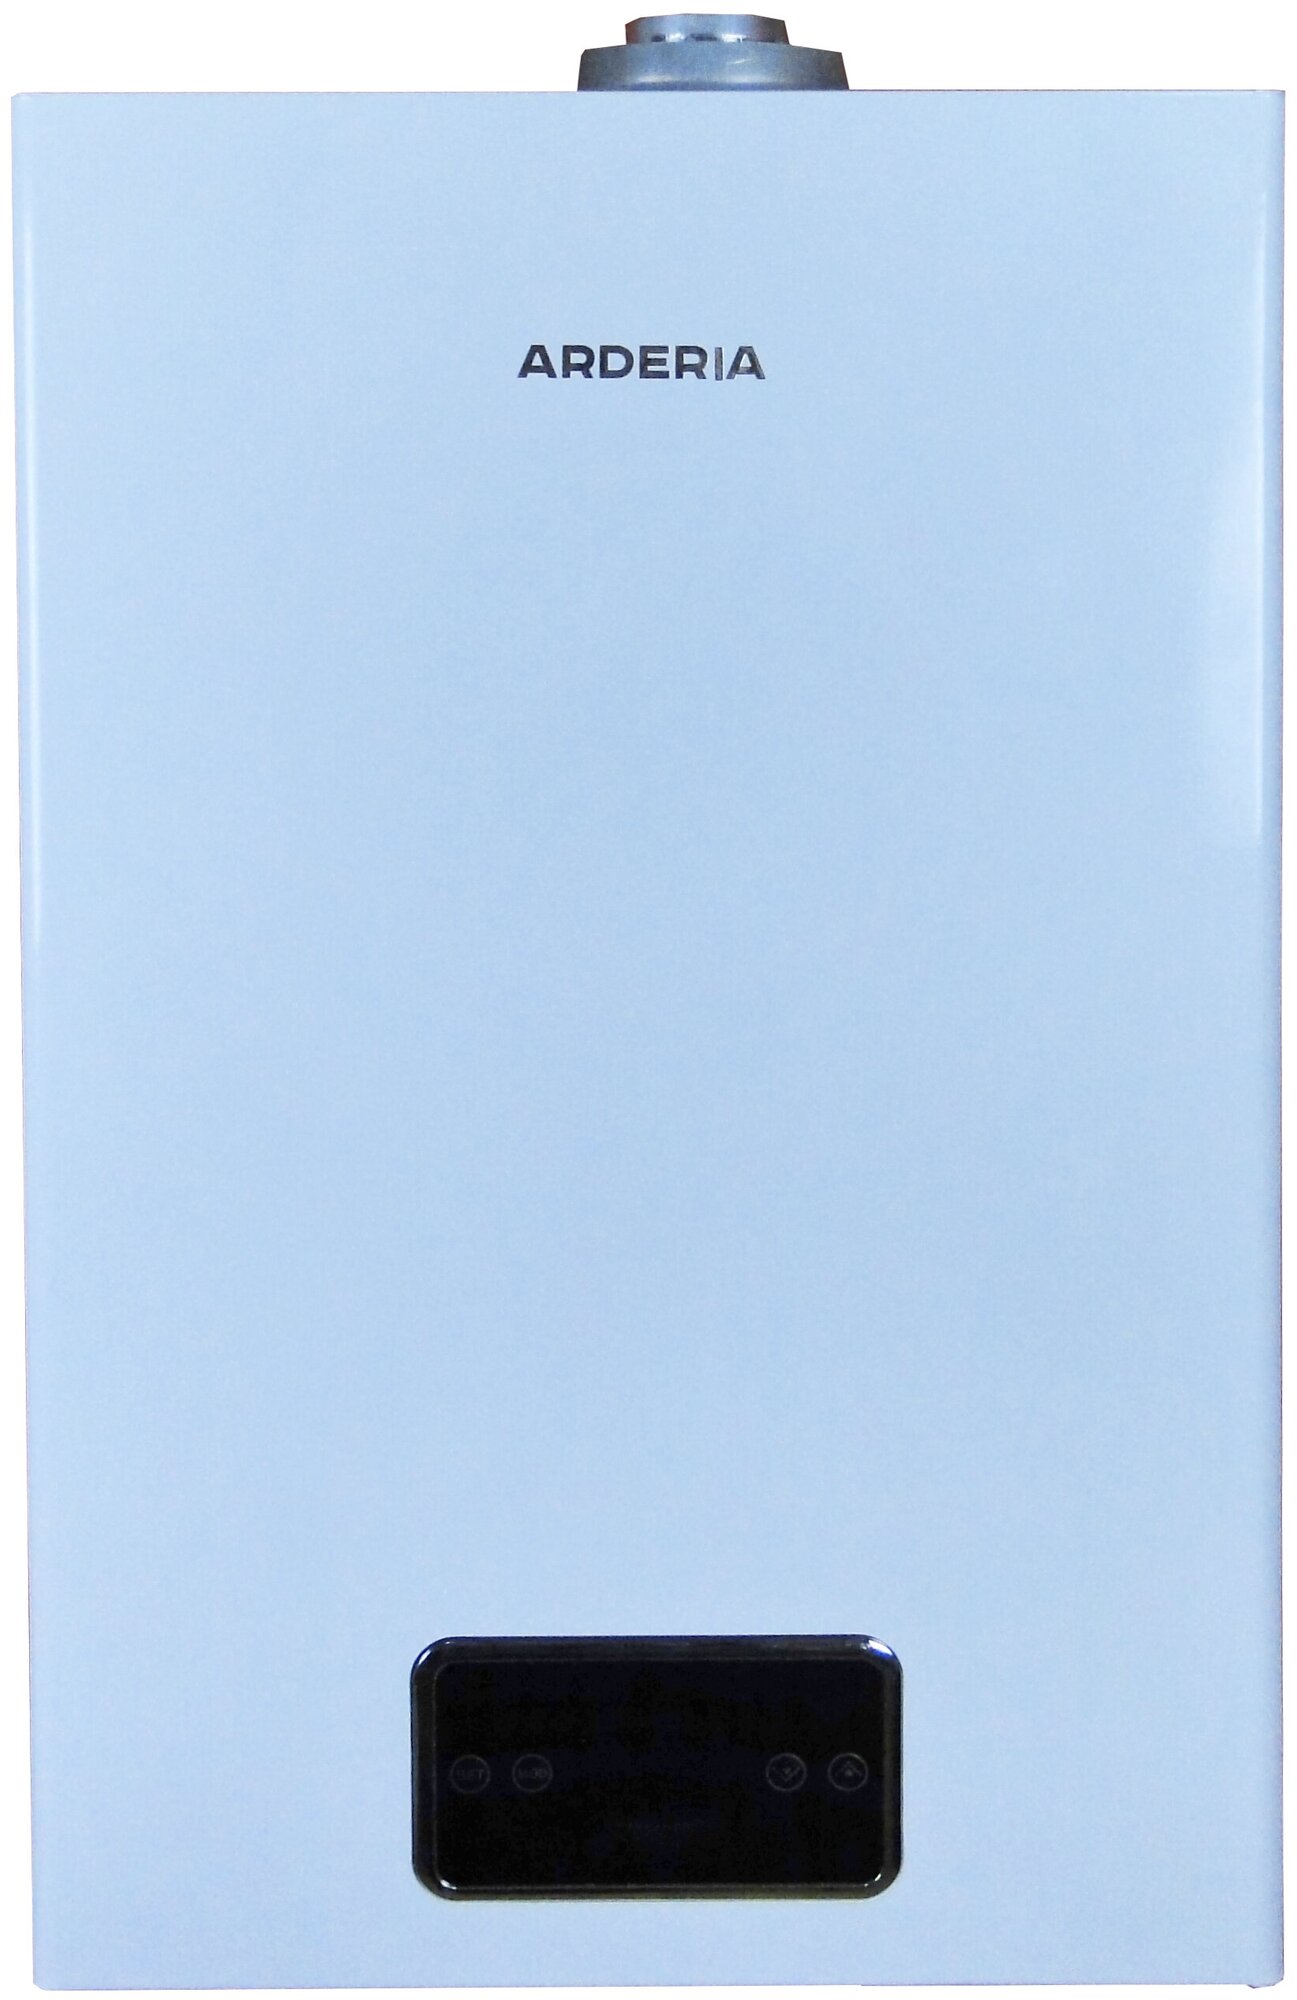 Котел газовый отопительный водогрейный Arderia S24, v3 kit, одноконтурный котел с датчиком бойлера косвенного нагрева